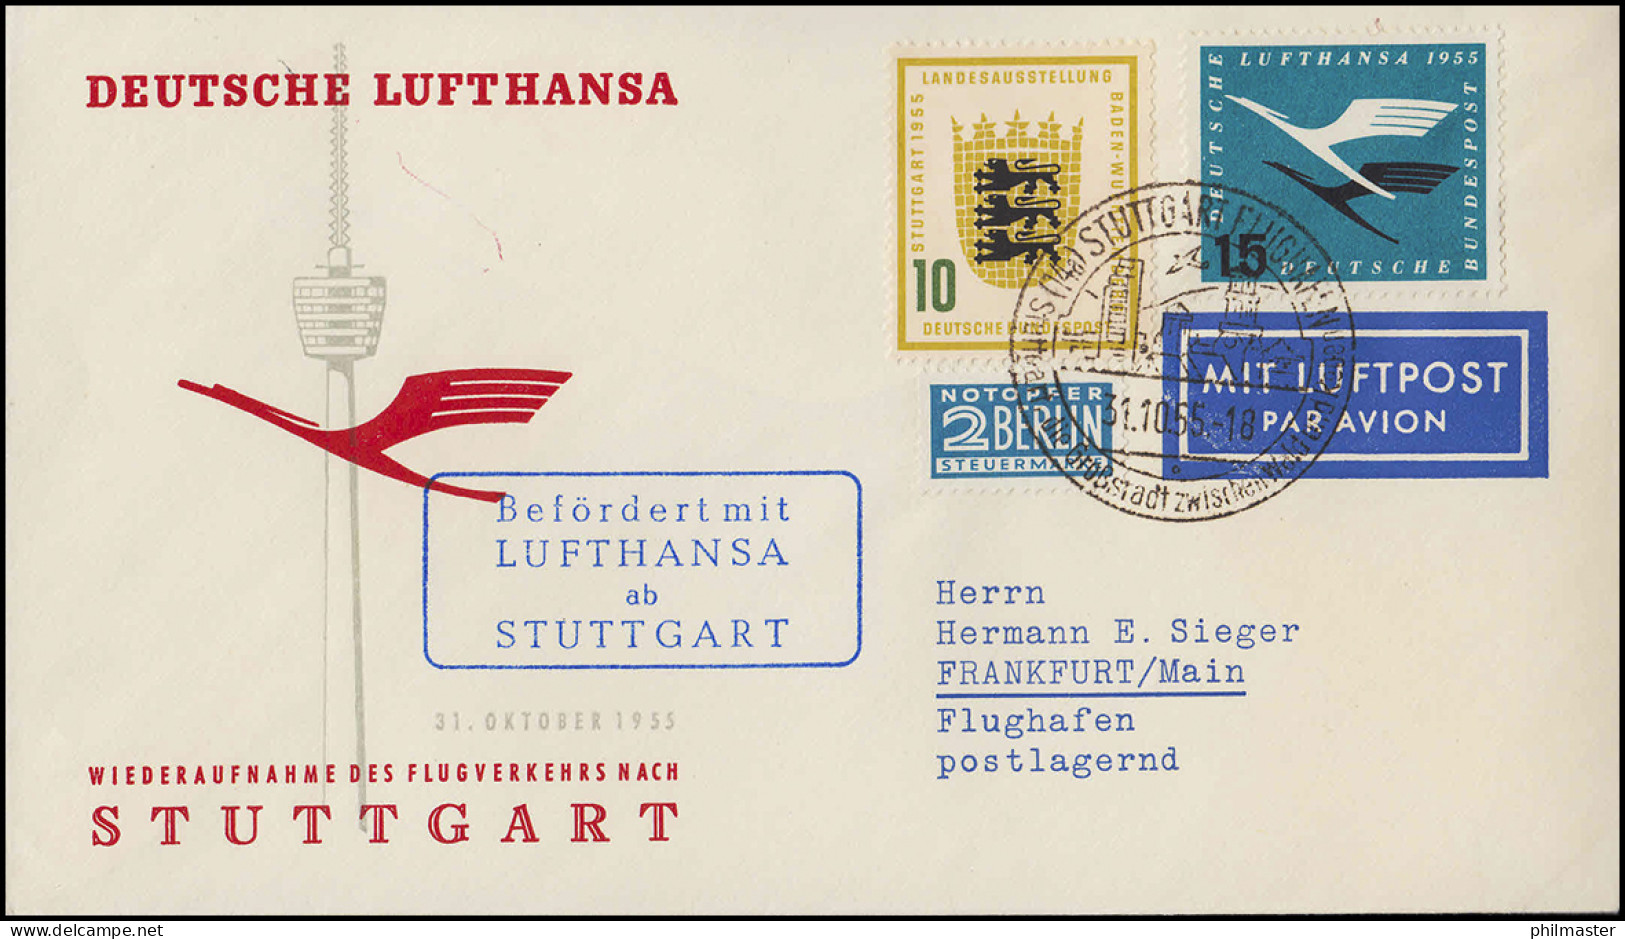 Luftpost Lufthansa Wiederaufnahme Inland Flugverkehr Nach Stuttgart, 31.10.1955 - Primi Voli